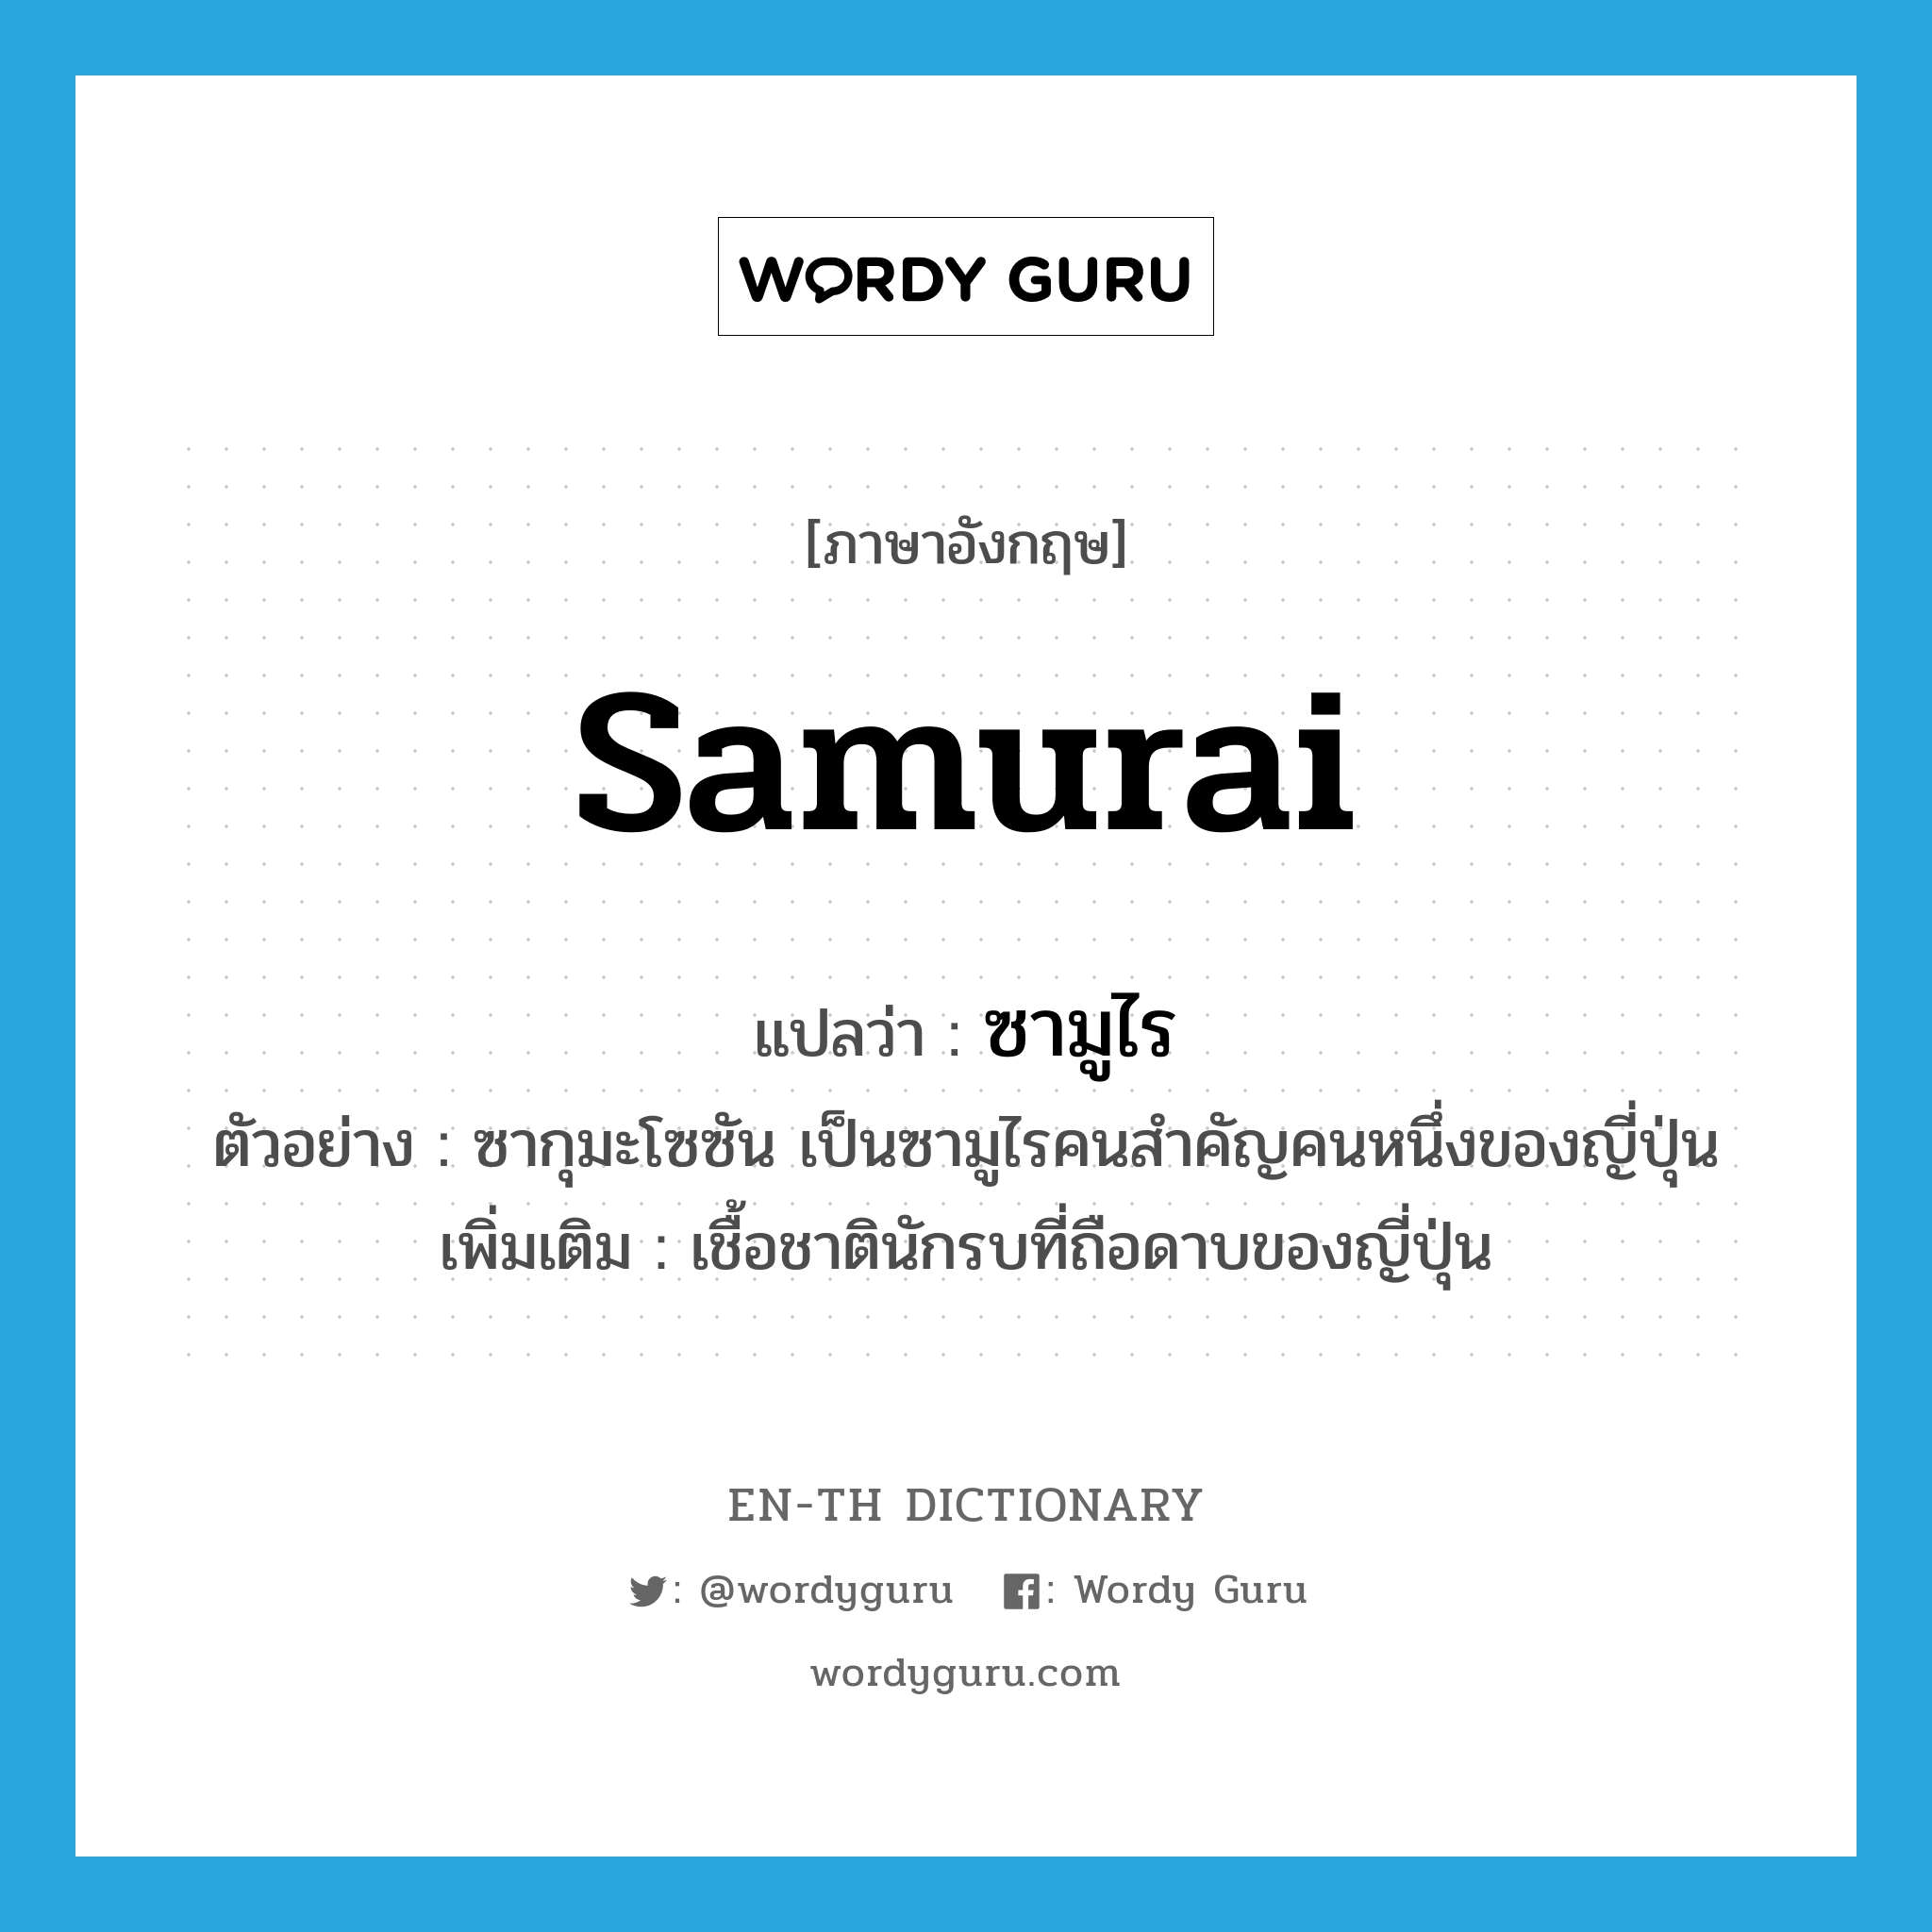 ซามูไร ภาษาอังกฤษ?, คำศัพท์ภาษาอังกฤษ ซามูไร แปลว่า samurai ประเภท N ตัวอย่าง ซากุมะโซซัน เป็นซามูไรคนสำคัญคนหนึ่งของญี่ปุ่น เพิ่มเติม เชื้อชาตินักรบที่ถือดาบของญี่ปุ่น หมวด N